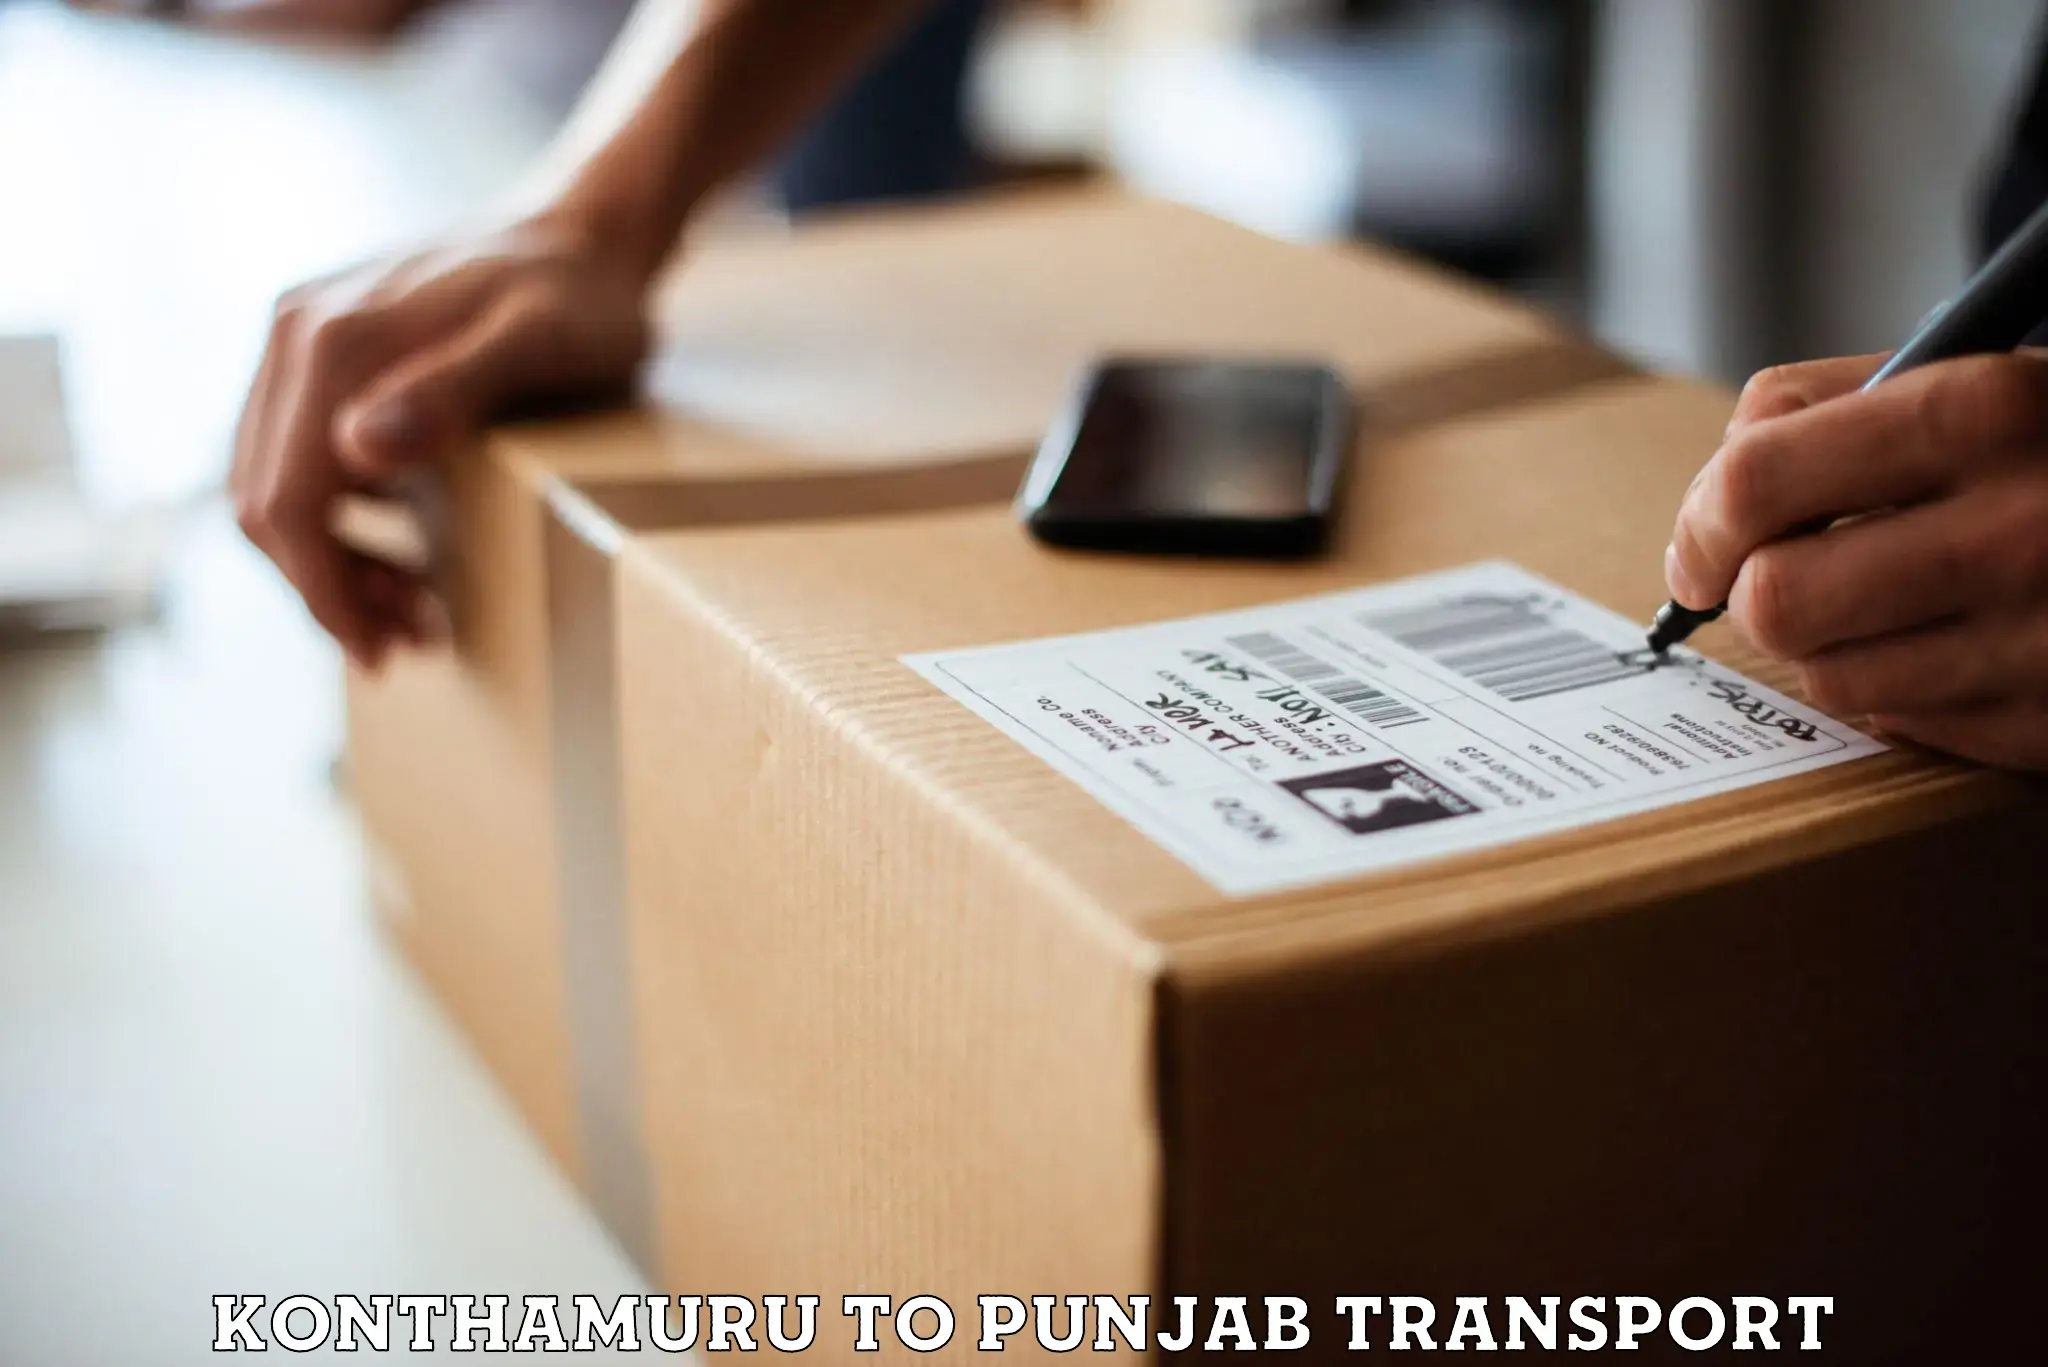 Furniture transport service Konthamuru to Jhunir